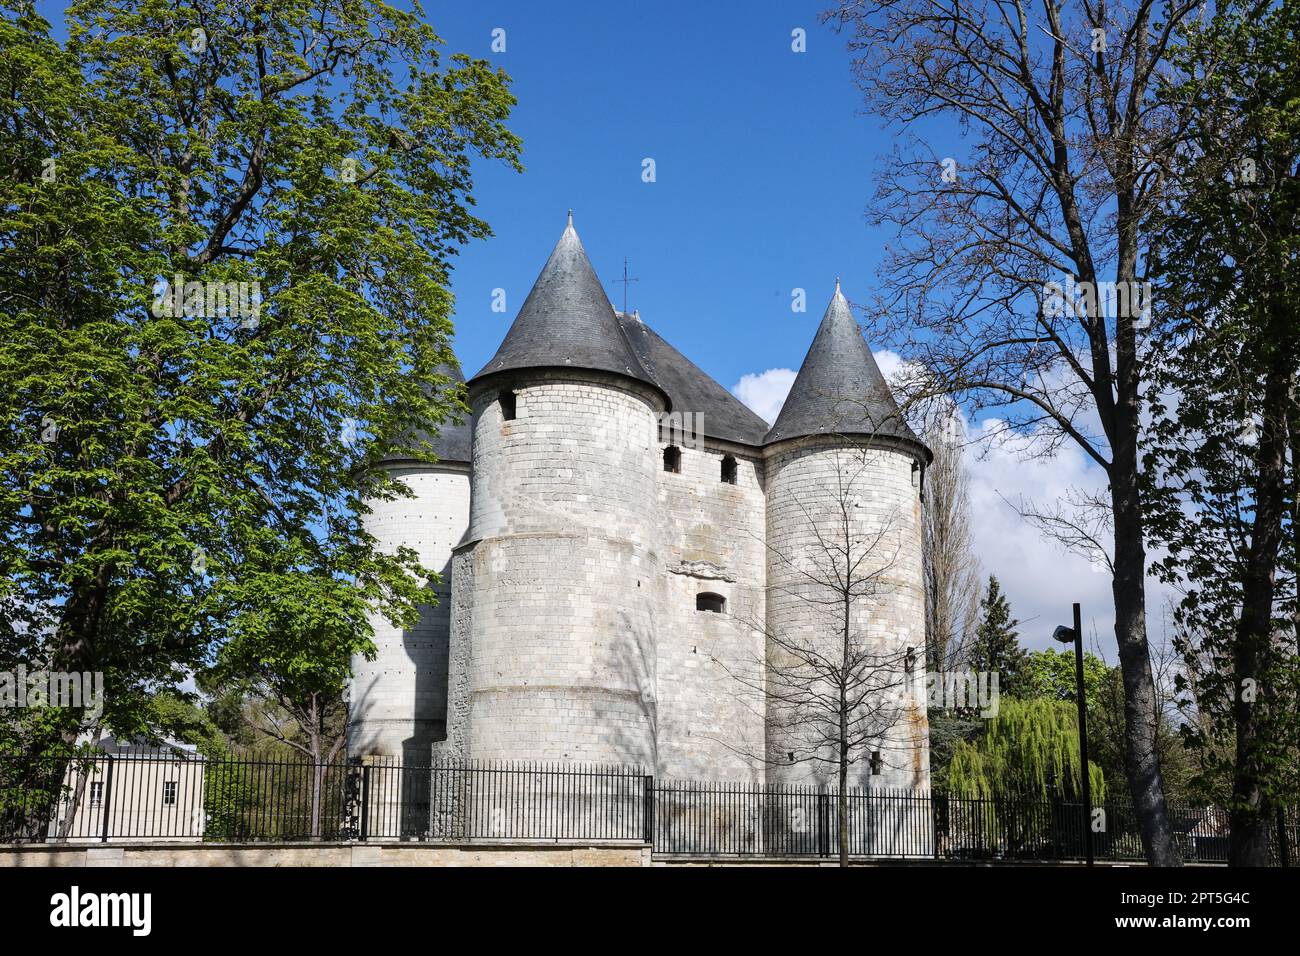 Château des Tourelles, EL castillo de TOURELLES El castillo de Tourelles (torretas) fue construido en 1196 por Philippe Augustus. Era una cabeza de puente destinada a defender la ciudad de Vernon situada en la frontera de las tierras de la corona y el ducado de Normandía. Este bastión consta de cuatro torres y un castillo. Situado al lado, el antiguo molino de Vernon, el viejo puente del molino, el viejo puente del molino de Vernon, el, viejo, molino, puente, en, vernon, in, francia, sobre, el, río sena, Normandía, Normandía, noroeste de Francia, francés, Europa, europeo, Foto de stock